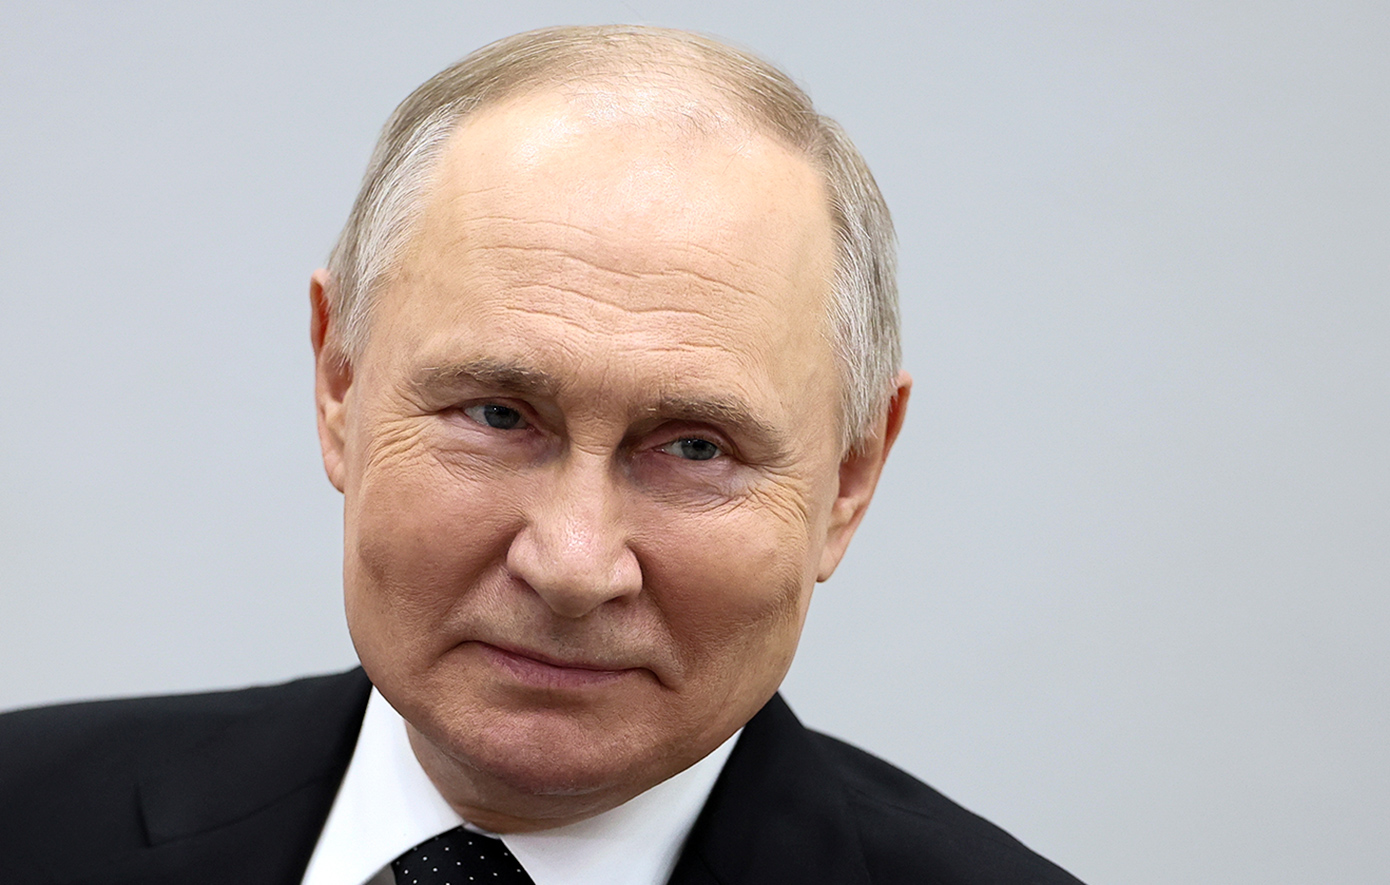 Τα σχόλια του Πούτιν για τα πυρηνικά όπλα δεν συνιστούν απειλή για χρήση τους, δηλώνει το Κρεμλίνο